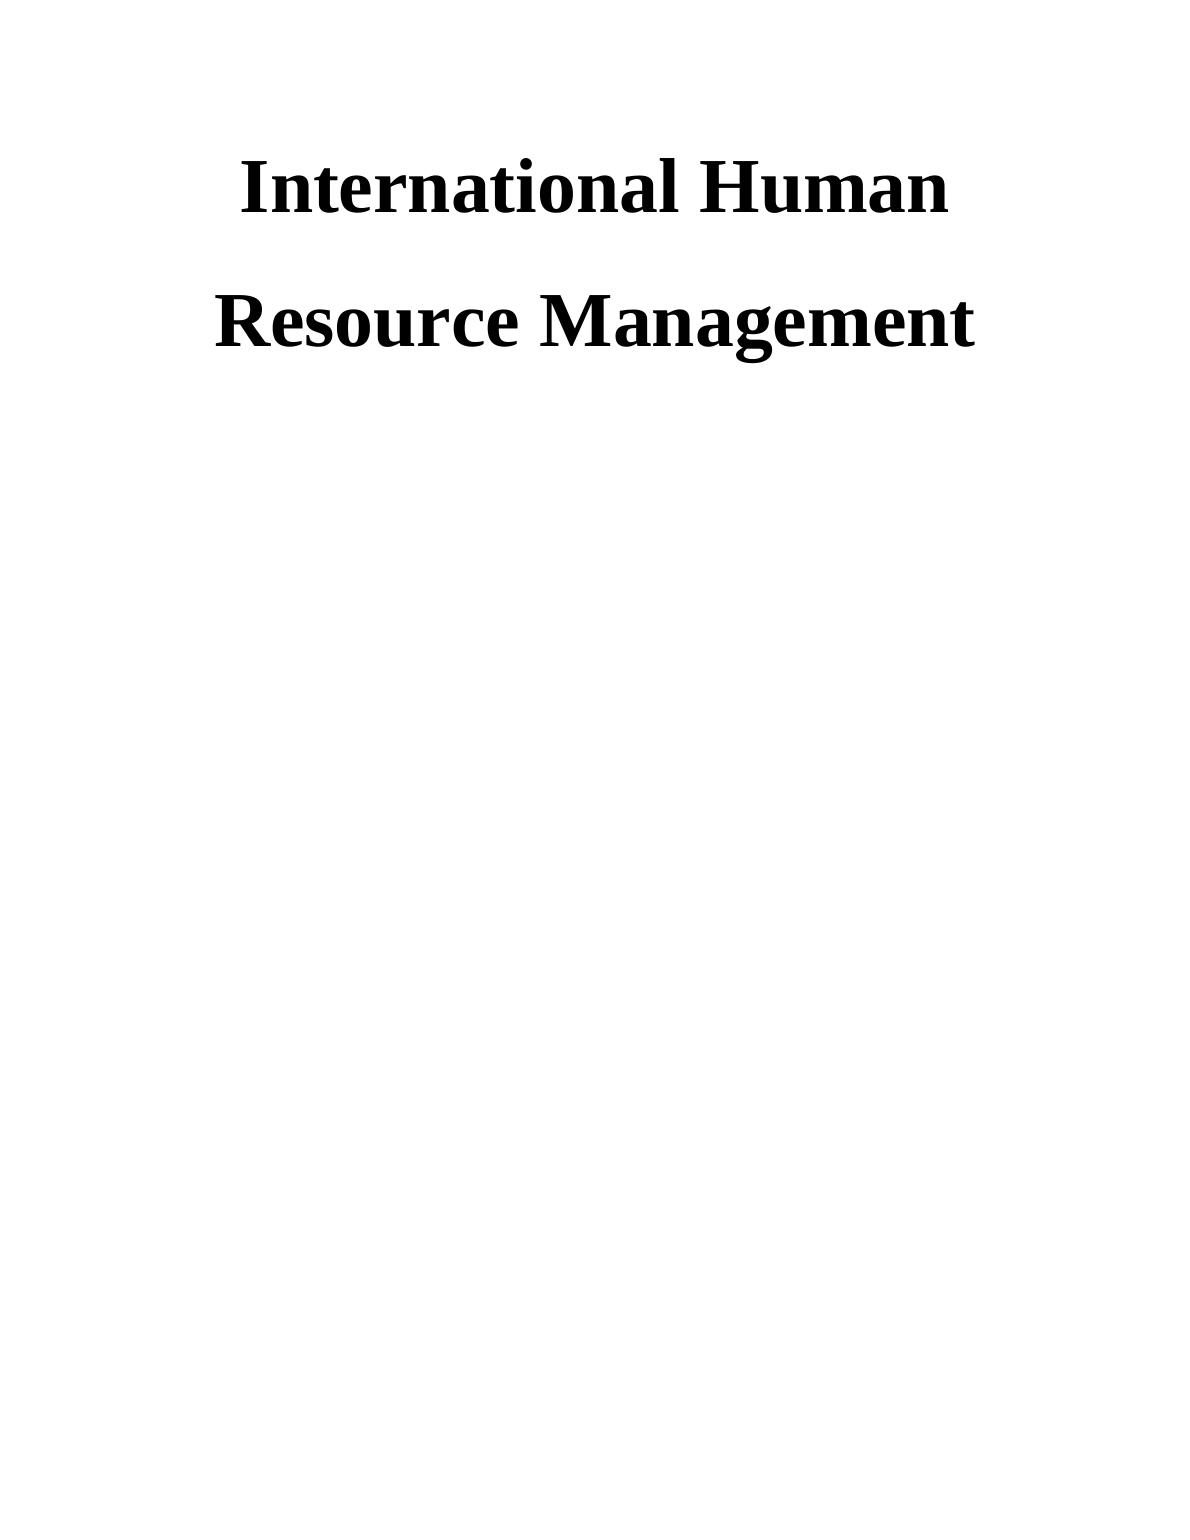 International Human Resource Management | Assignment Sample_1